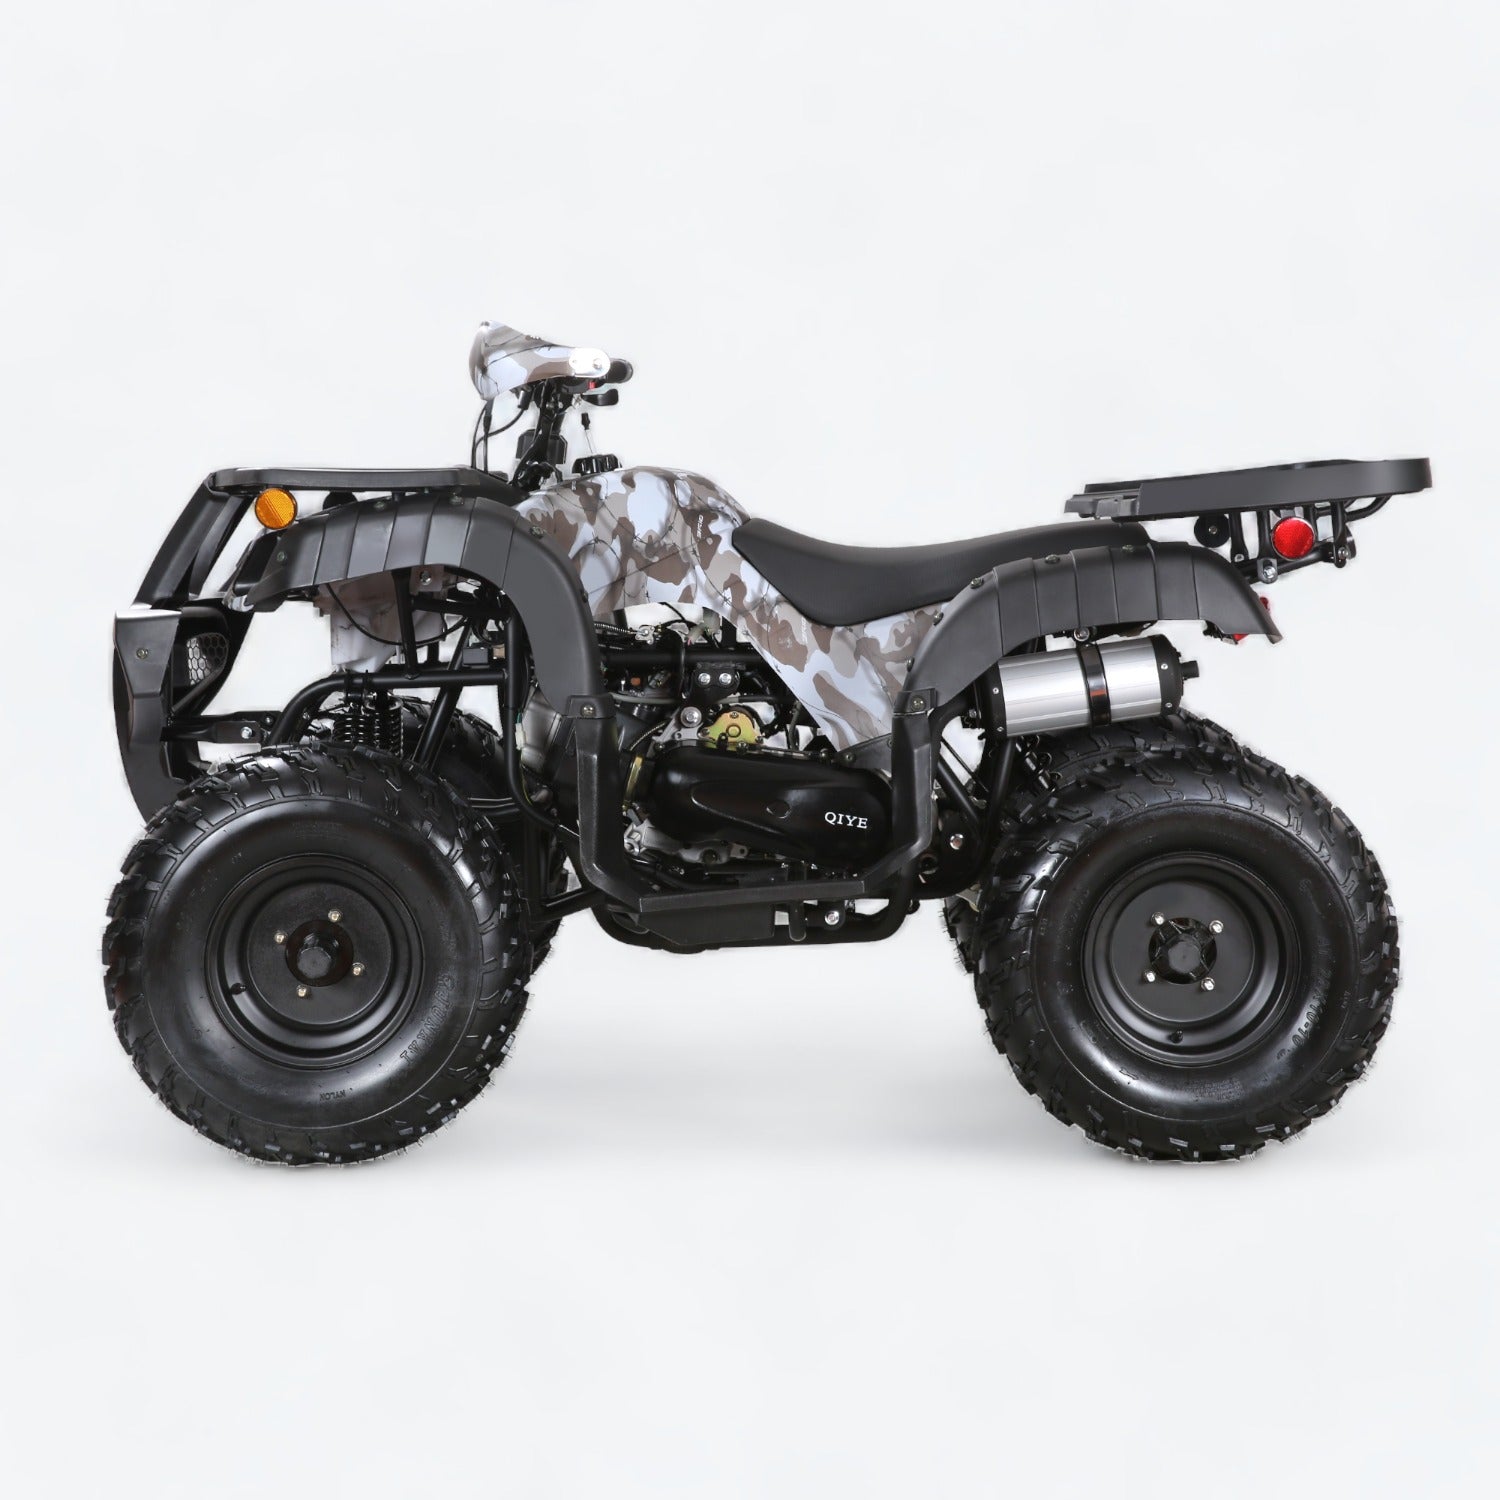 Coolster ATV-3200U